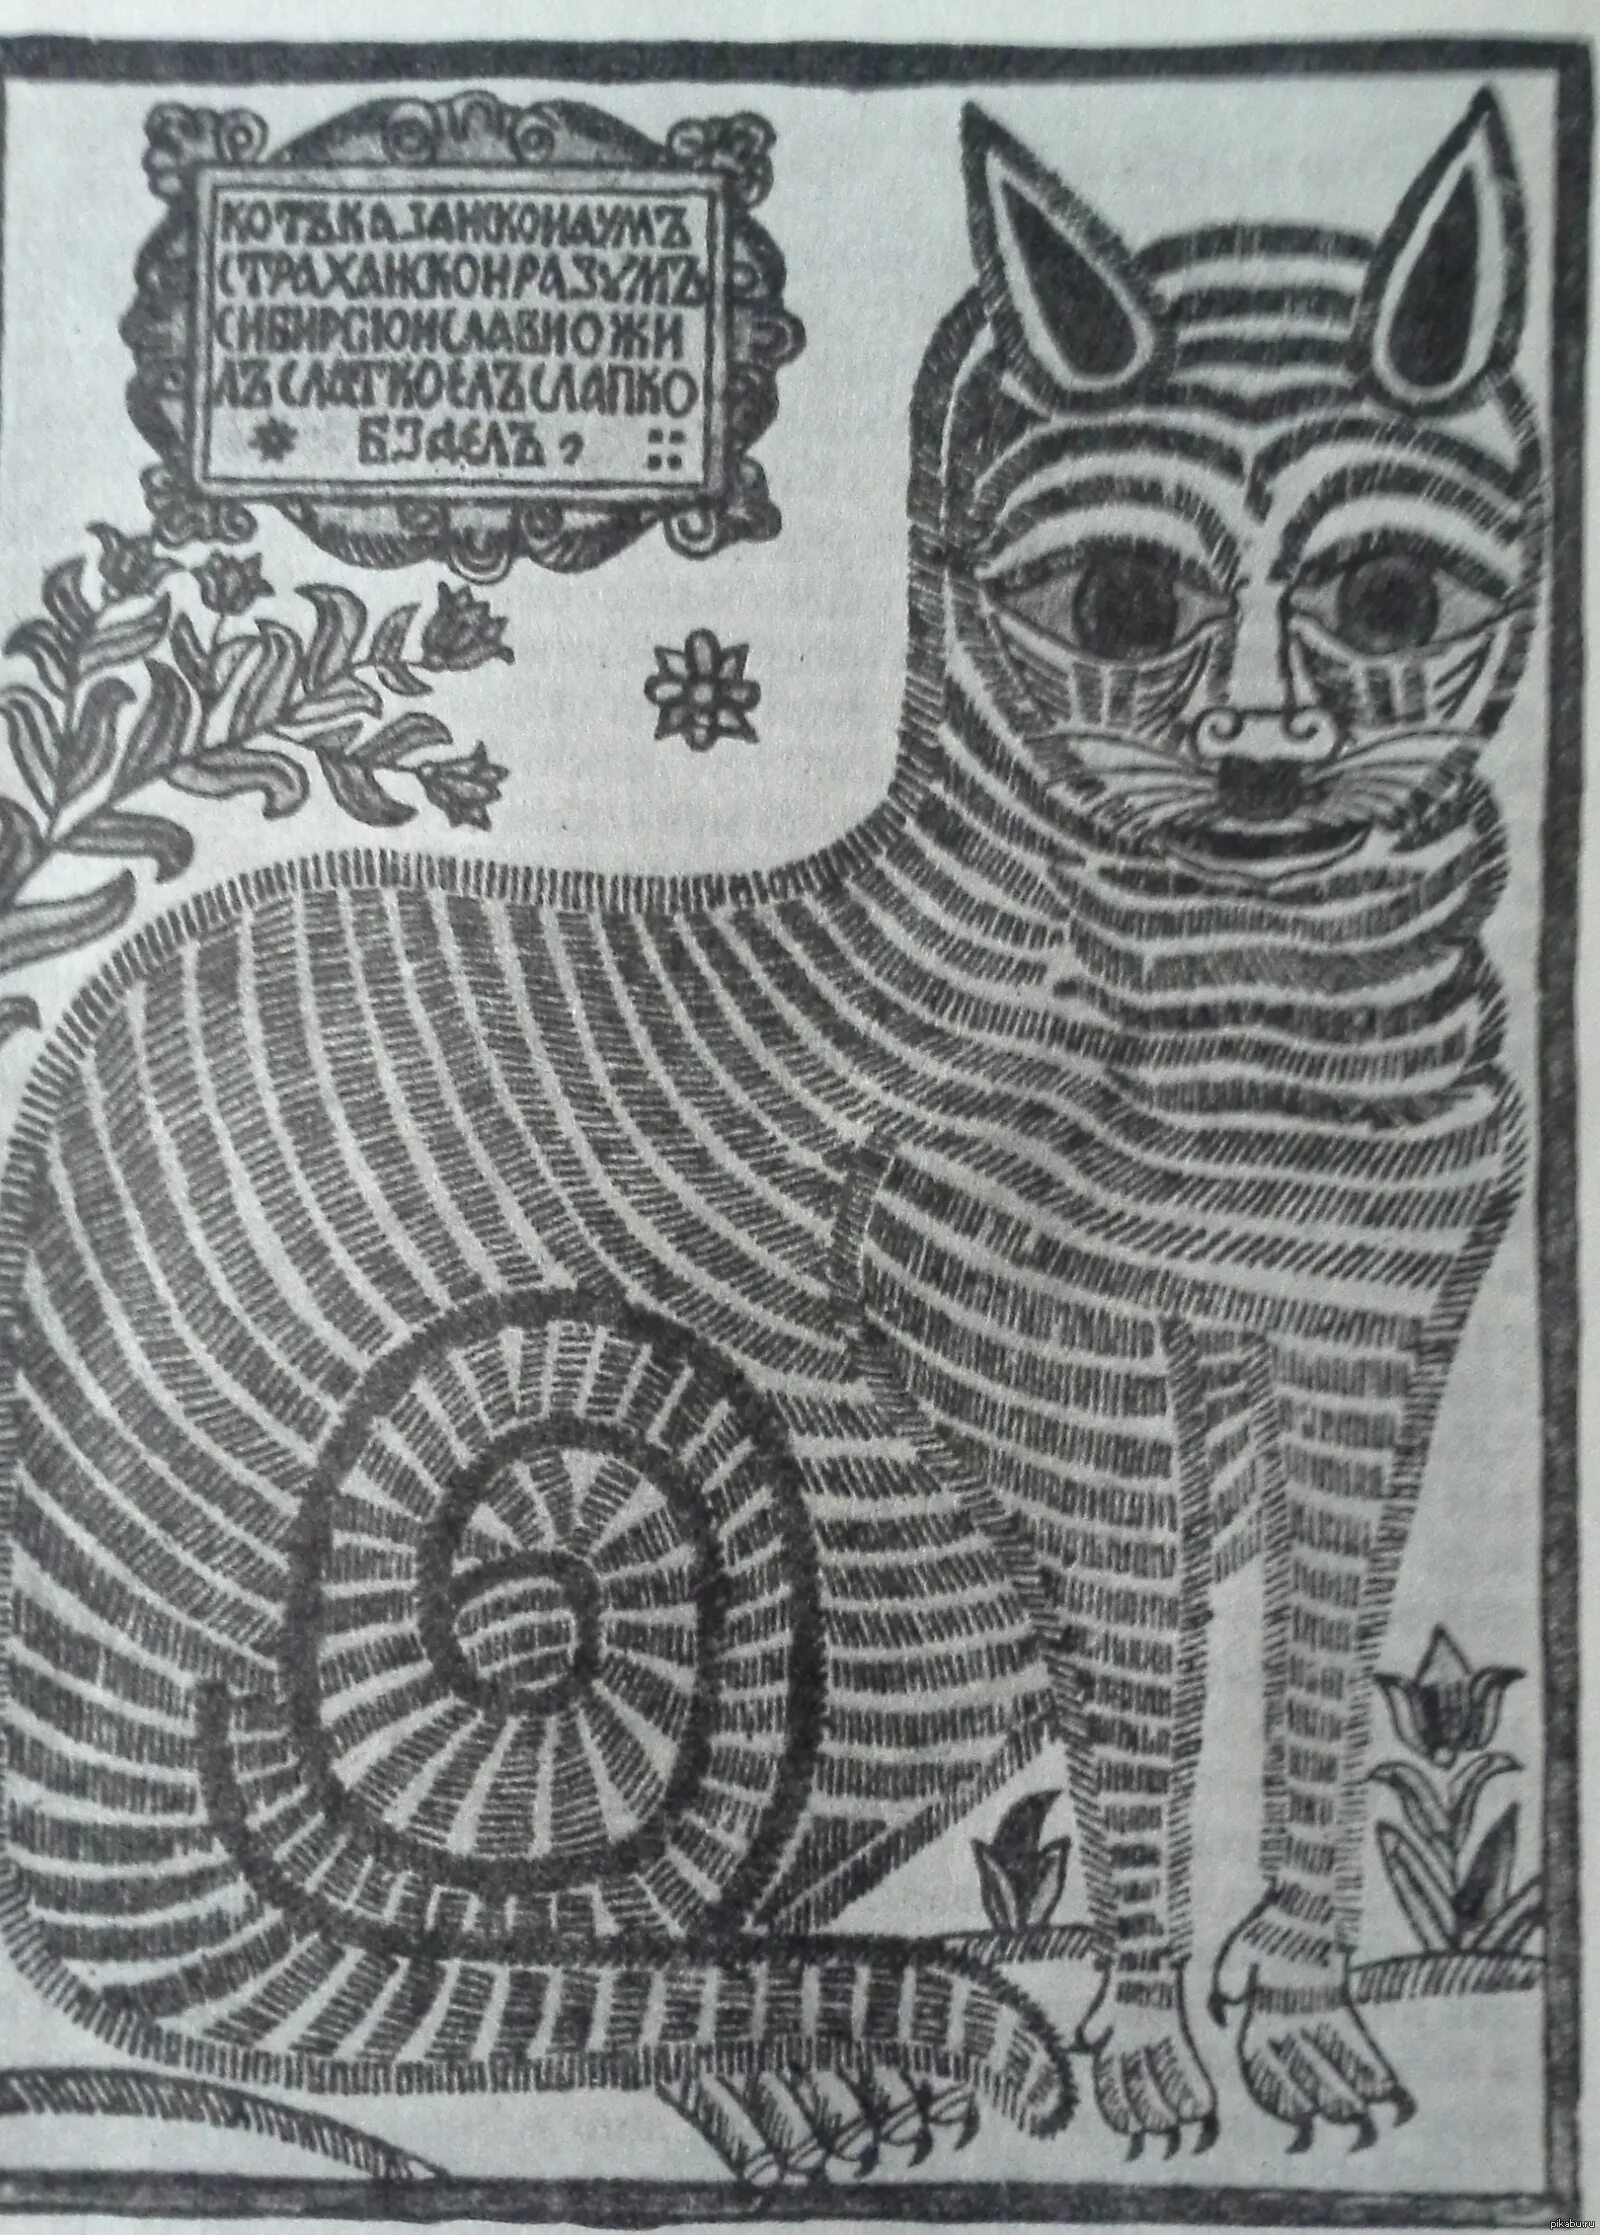 Интригующая раскраска казанского кота